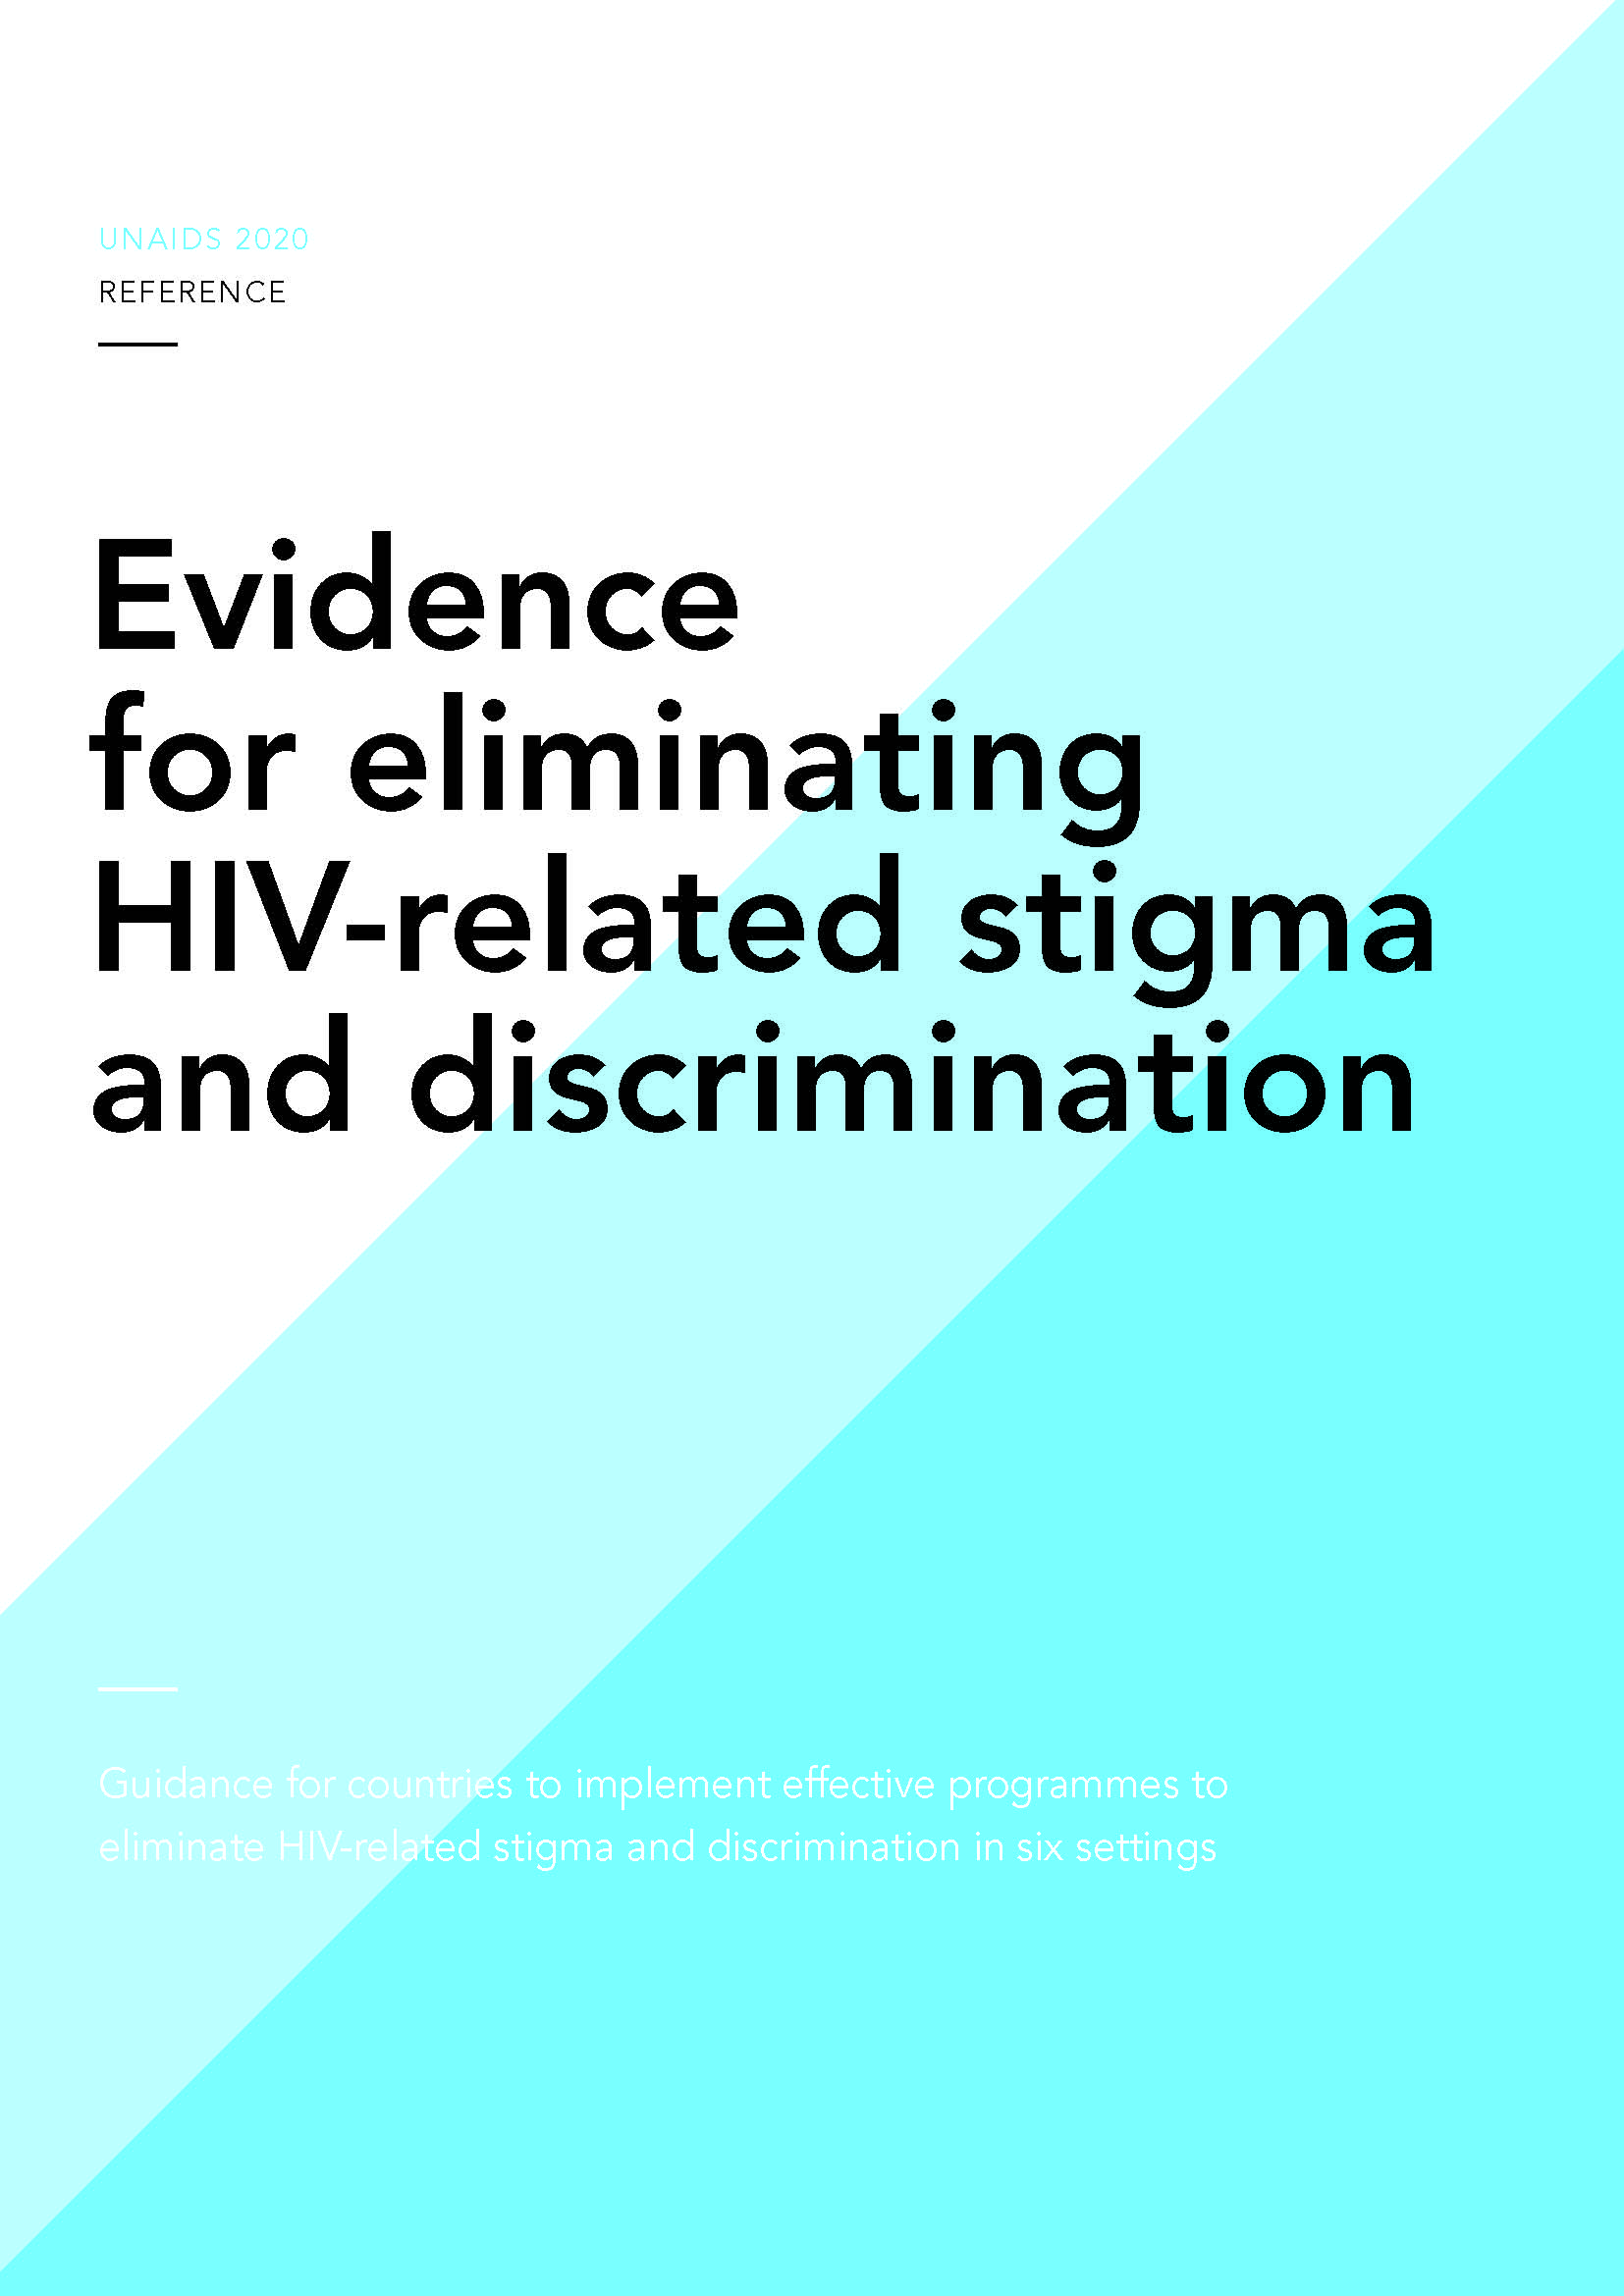 provas que eliminam o estigma e a discriminação abrangem